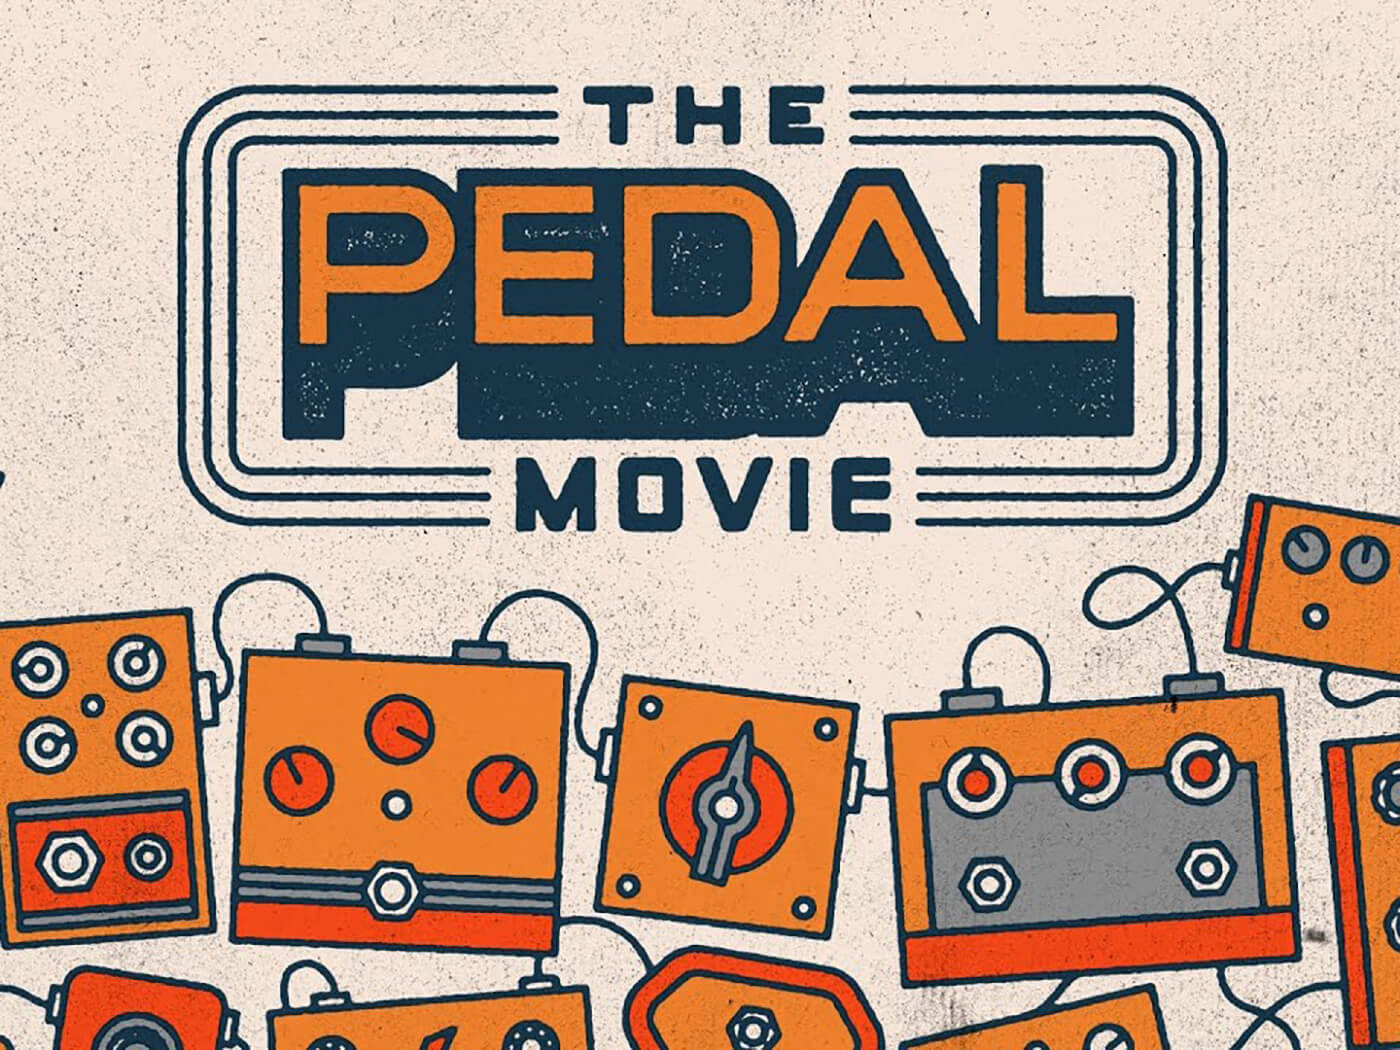 Reverb.com Pedal Movie